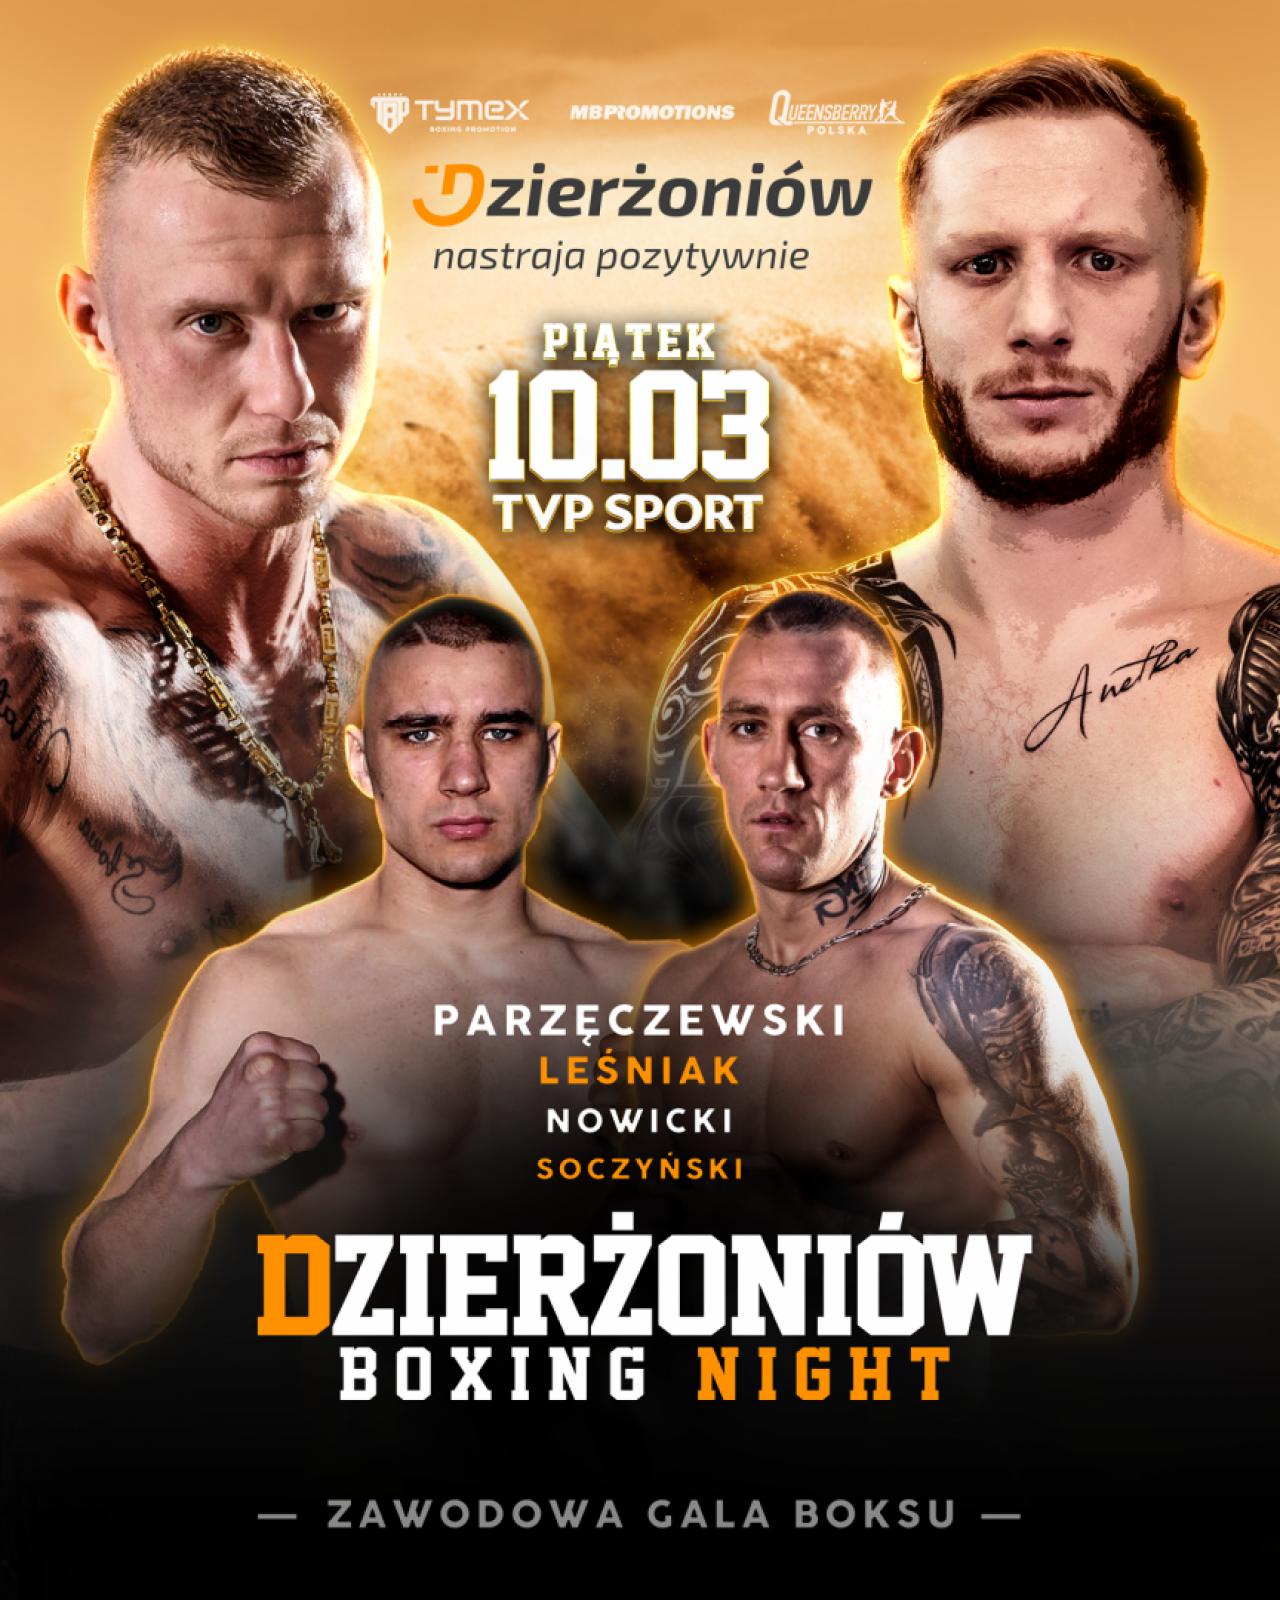 Plakat ze zdjęćiem dwóch bokserów i informacjami podanymi w tekście 